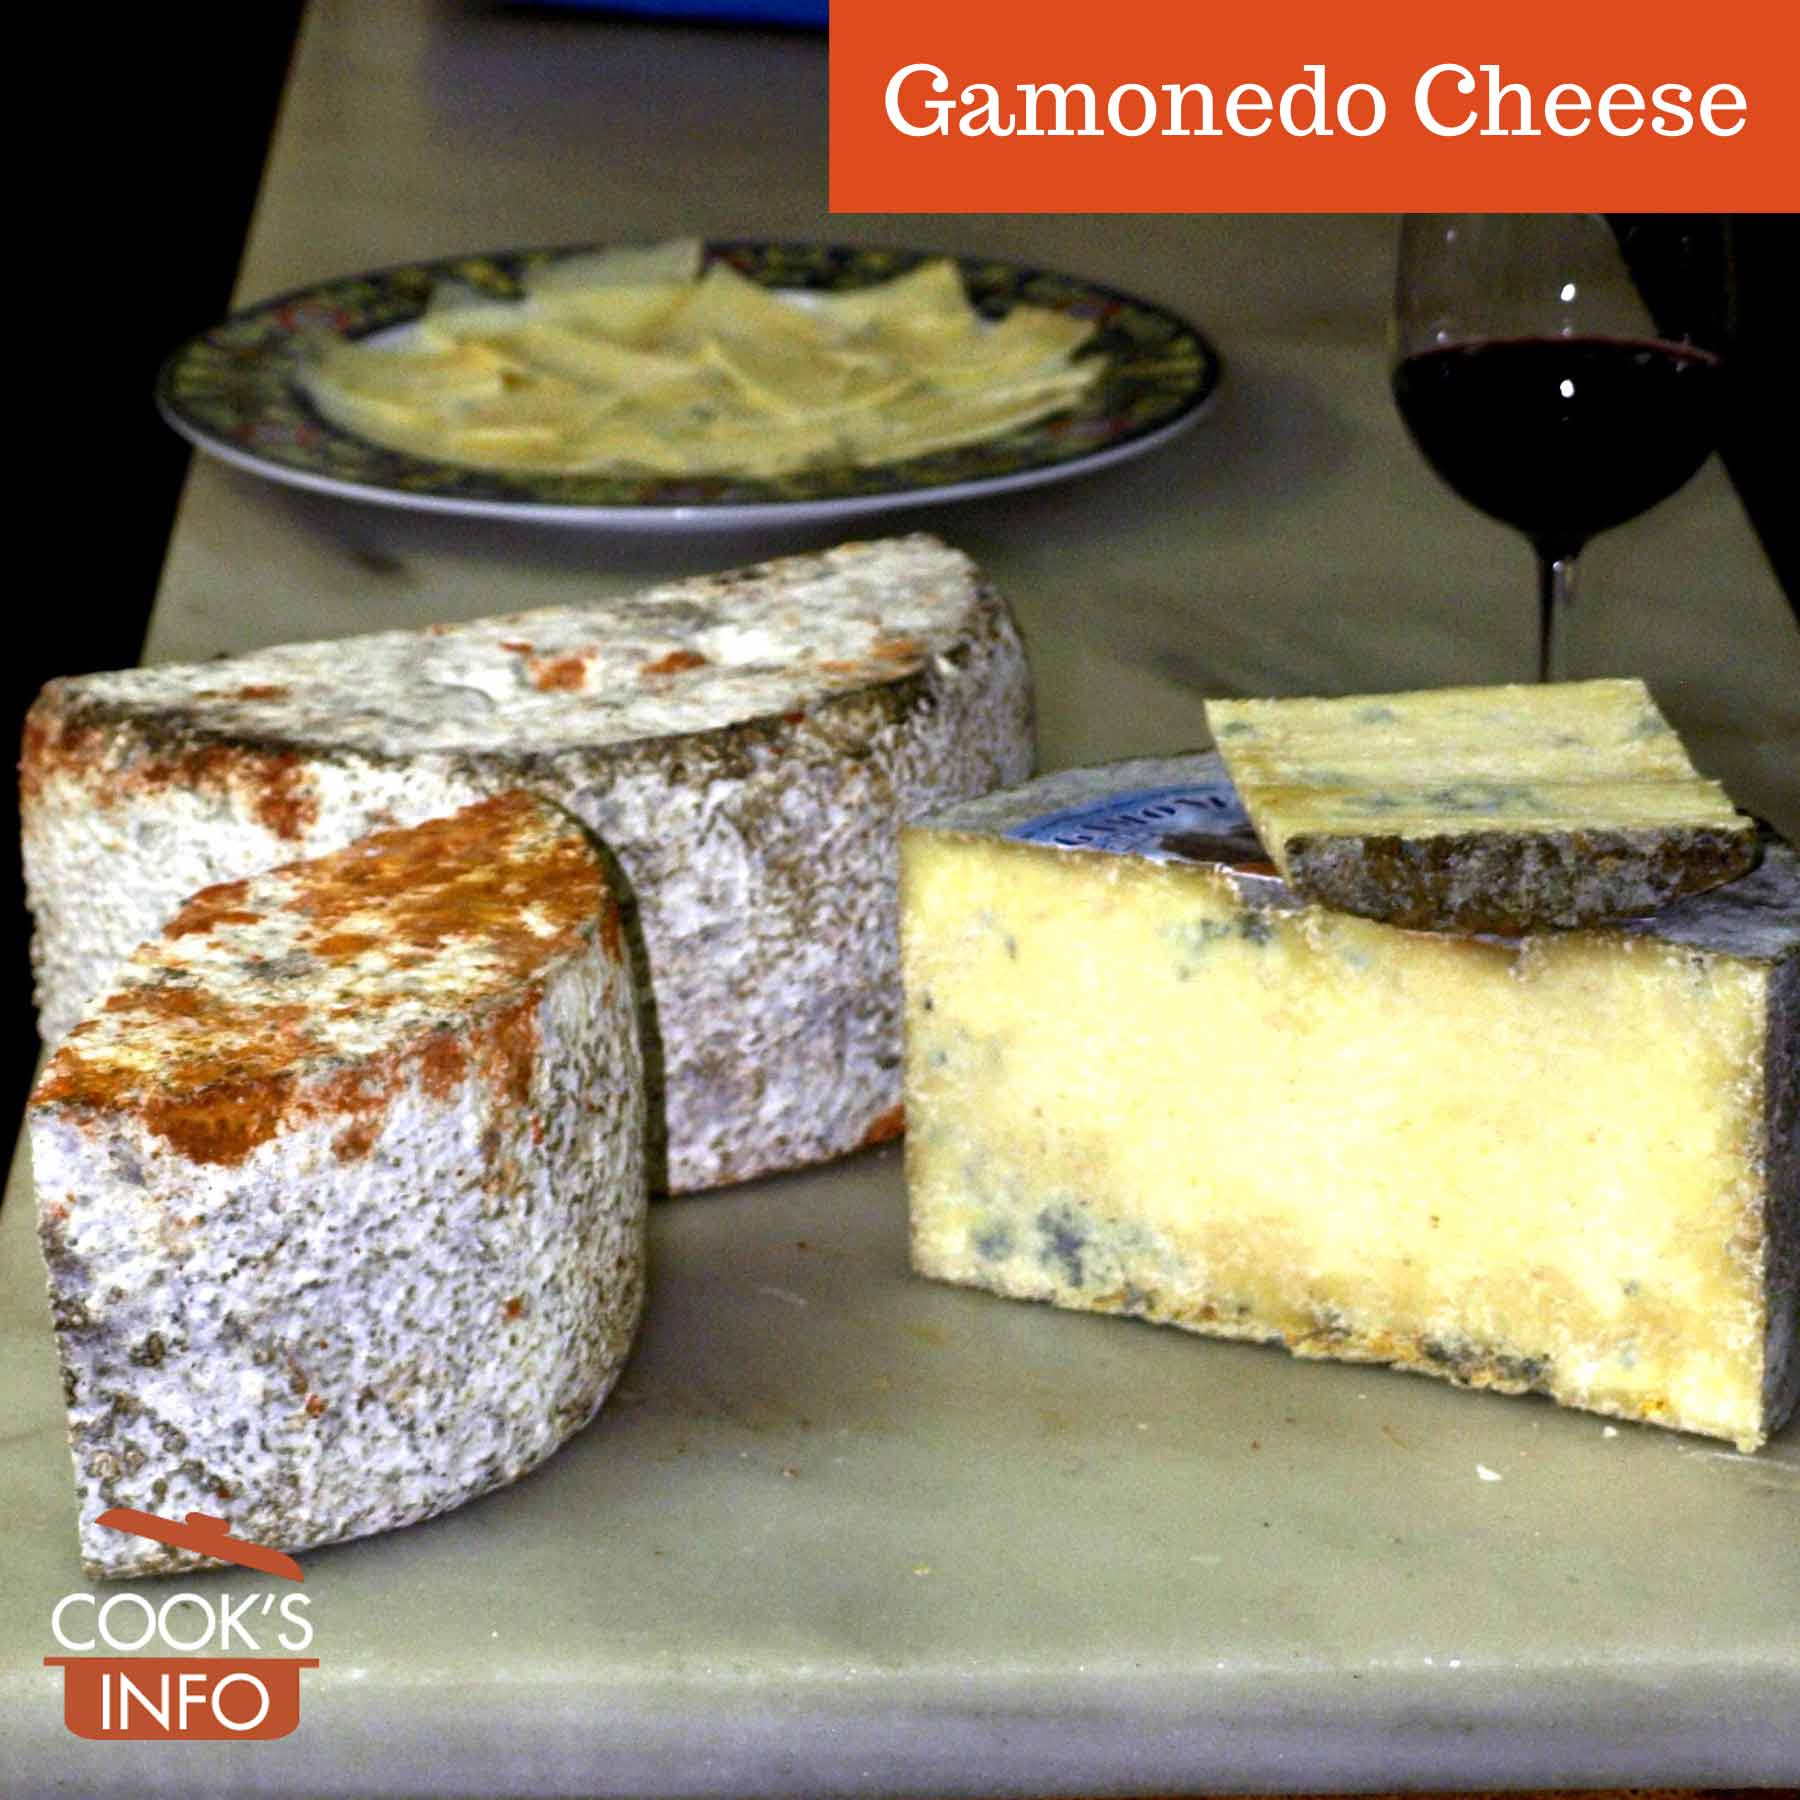 Gamonedo cheese